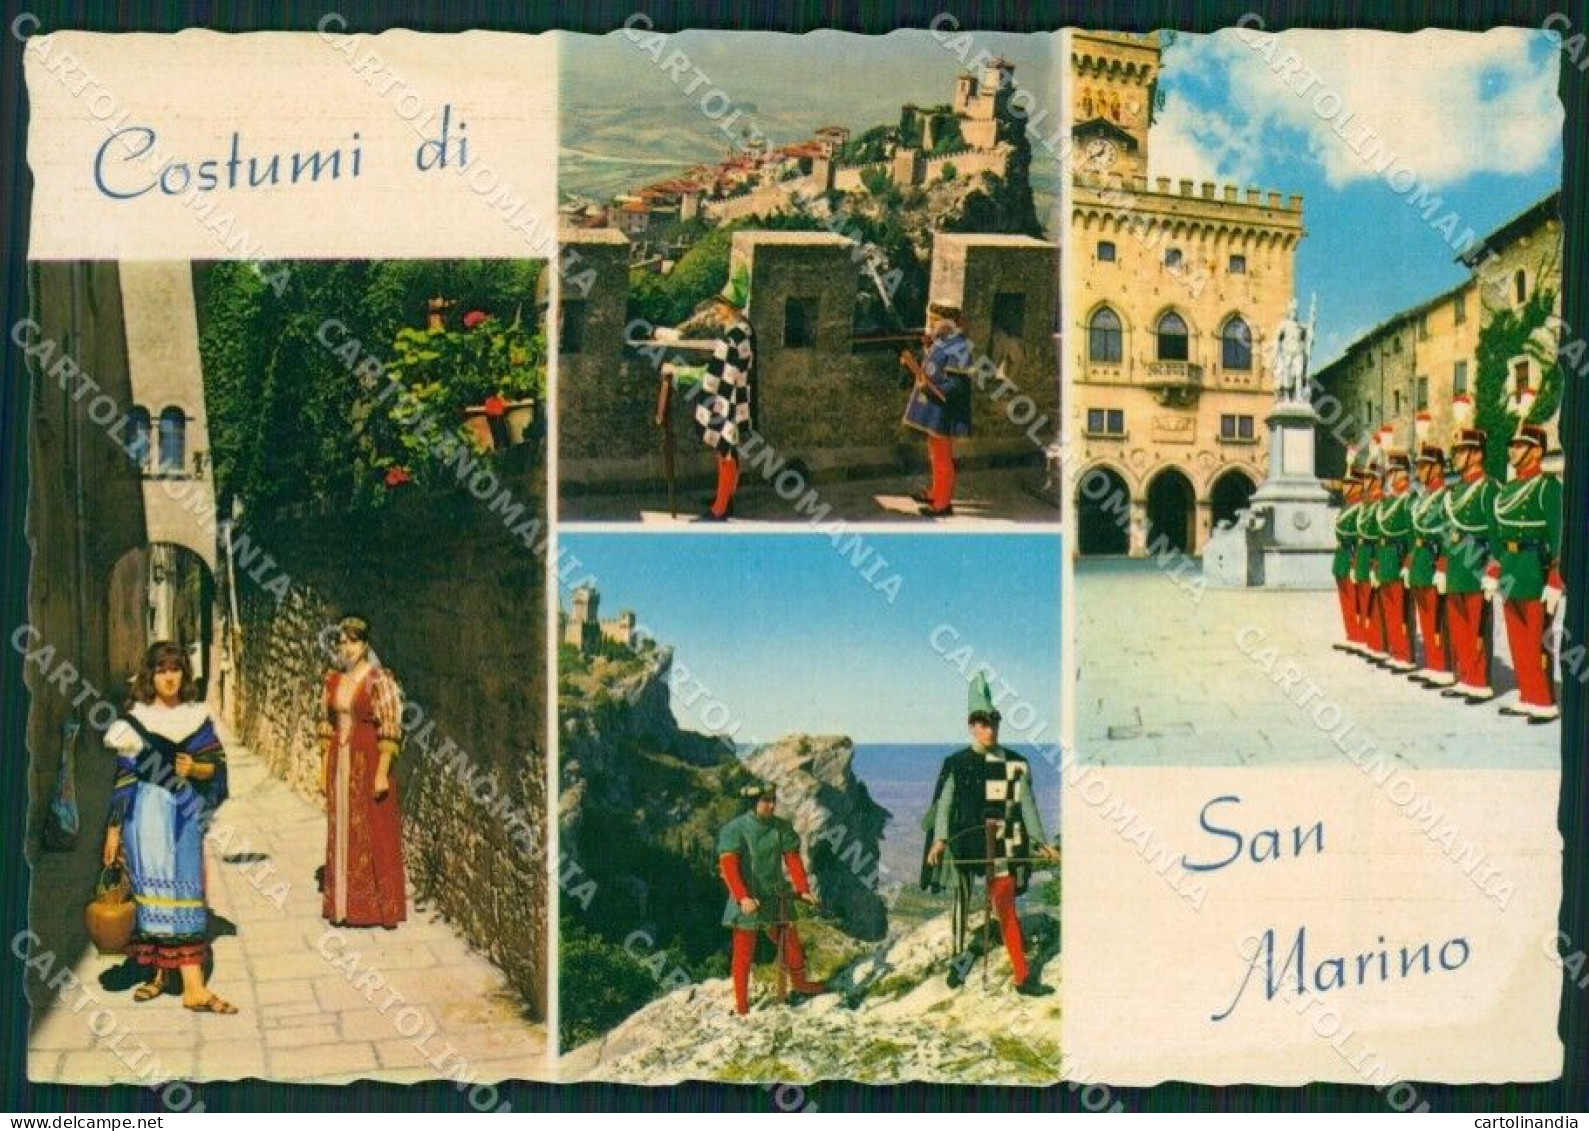 Repubblica Di San Marino Costumi Foto FG Cartolina ZKM8265 - Reggio Emilia